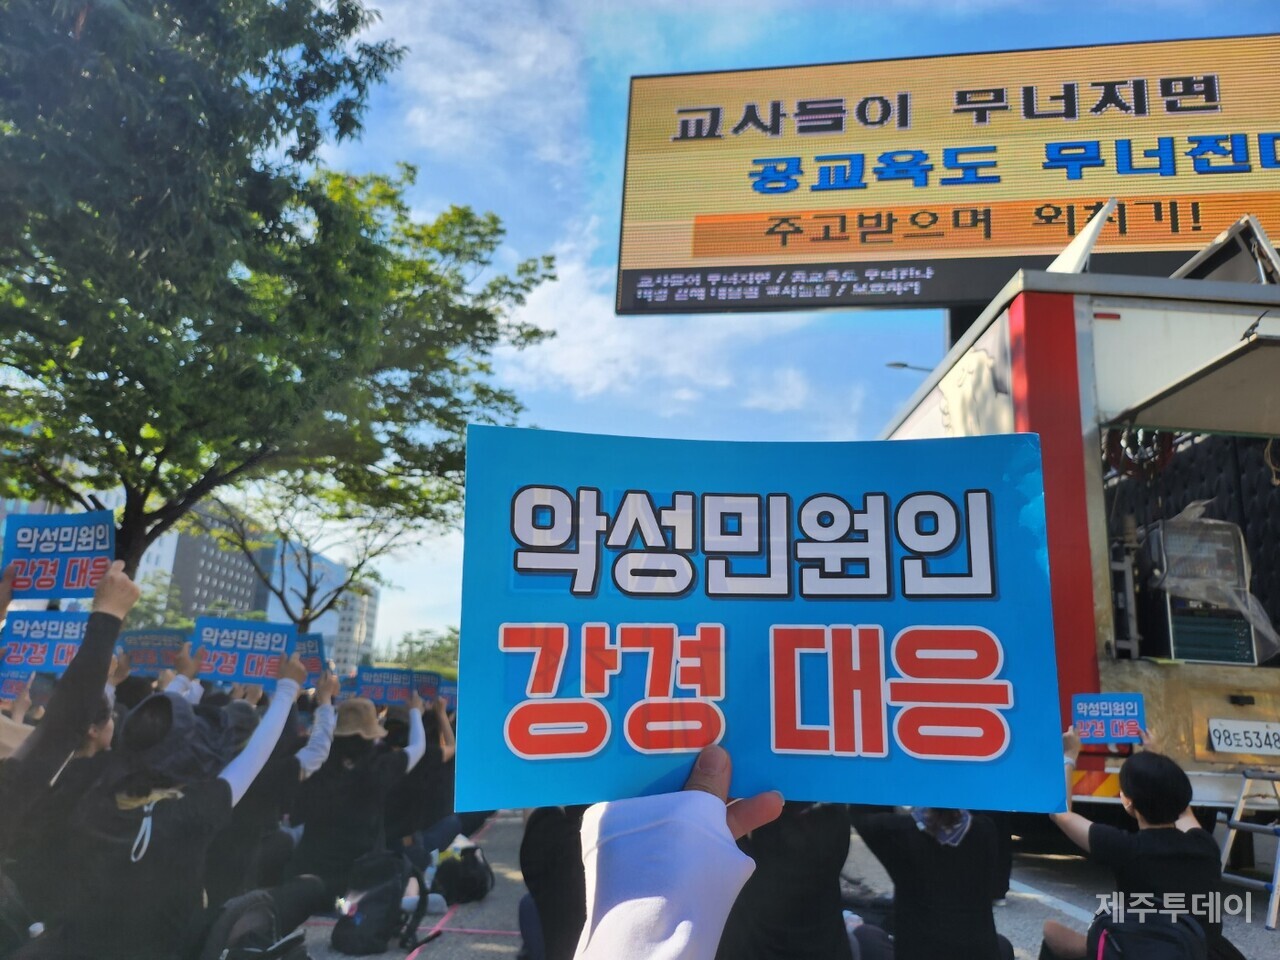 지난 2일 서울 여의도 국회의사당 앞에서 7차 50만 교원 총궐기 대회가 열렸다. 이날 참가자 수는 주최 측 추산 30만명이다. (사진=종이호랑이 제공)